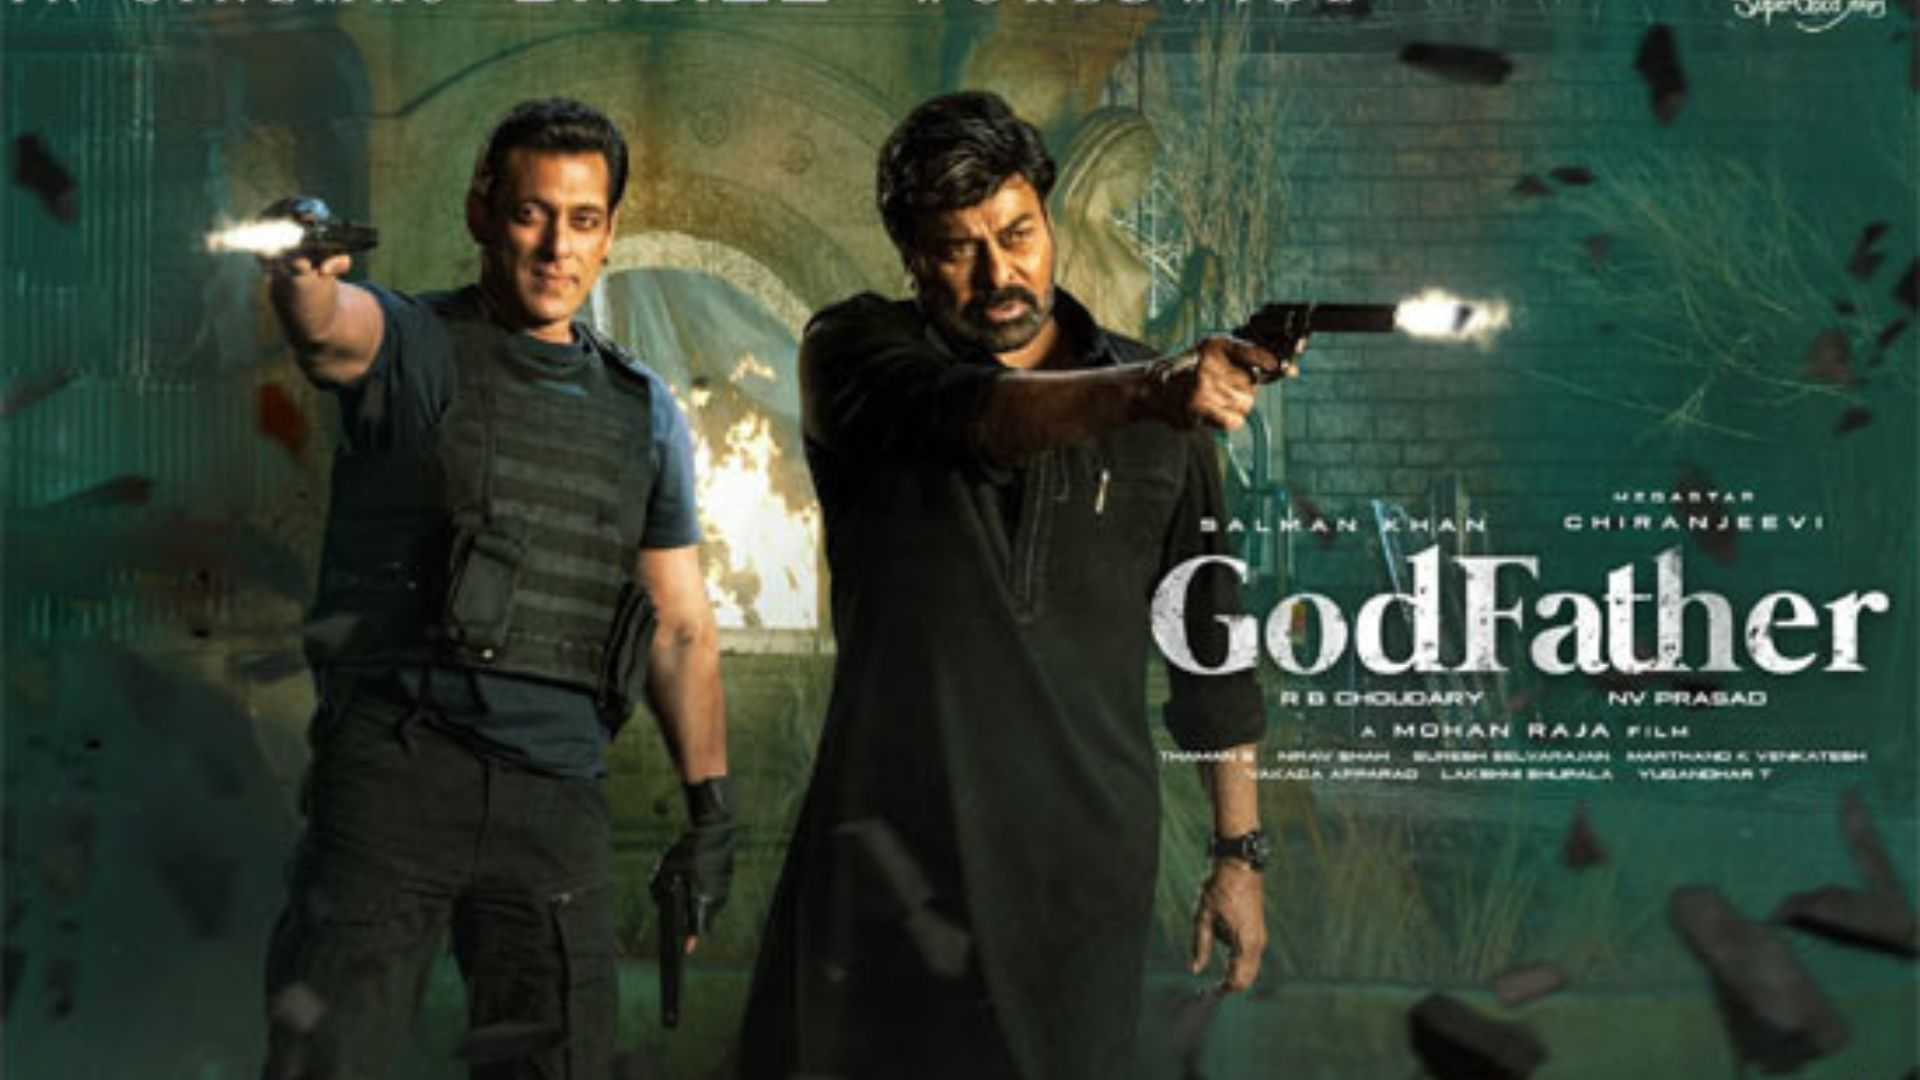 गॉडफादर एडवांस बुकिंग: रिलीज से पहले ही चिरंजीवी और सलमान की फिल्म ने कमाए करोड़ो रुपये